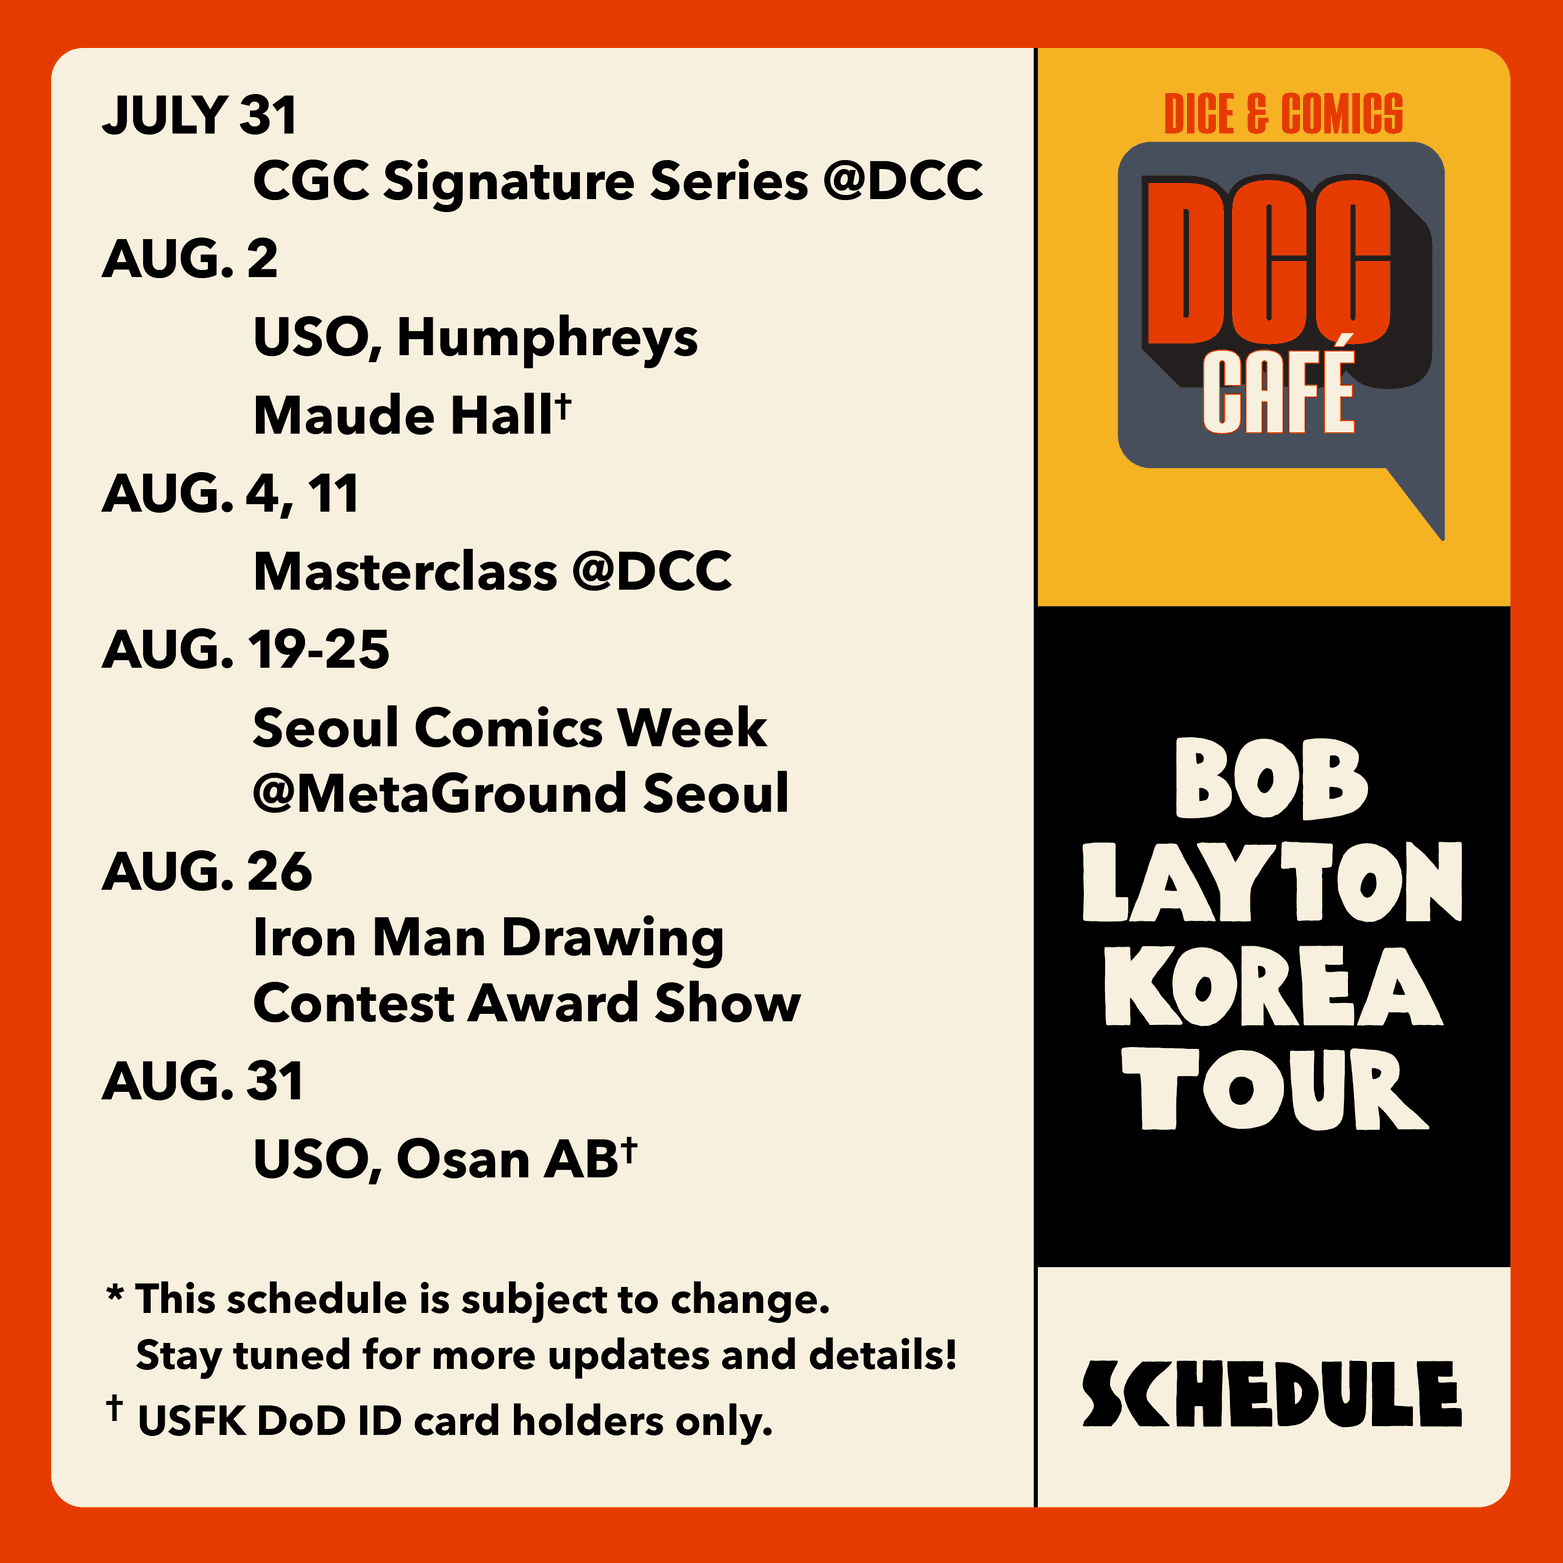 Bob Layton Korea Tour Schedule